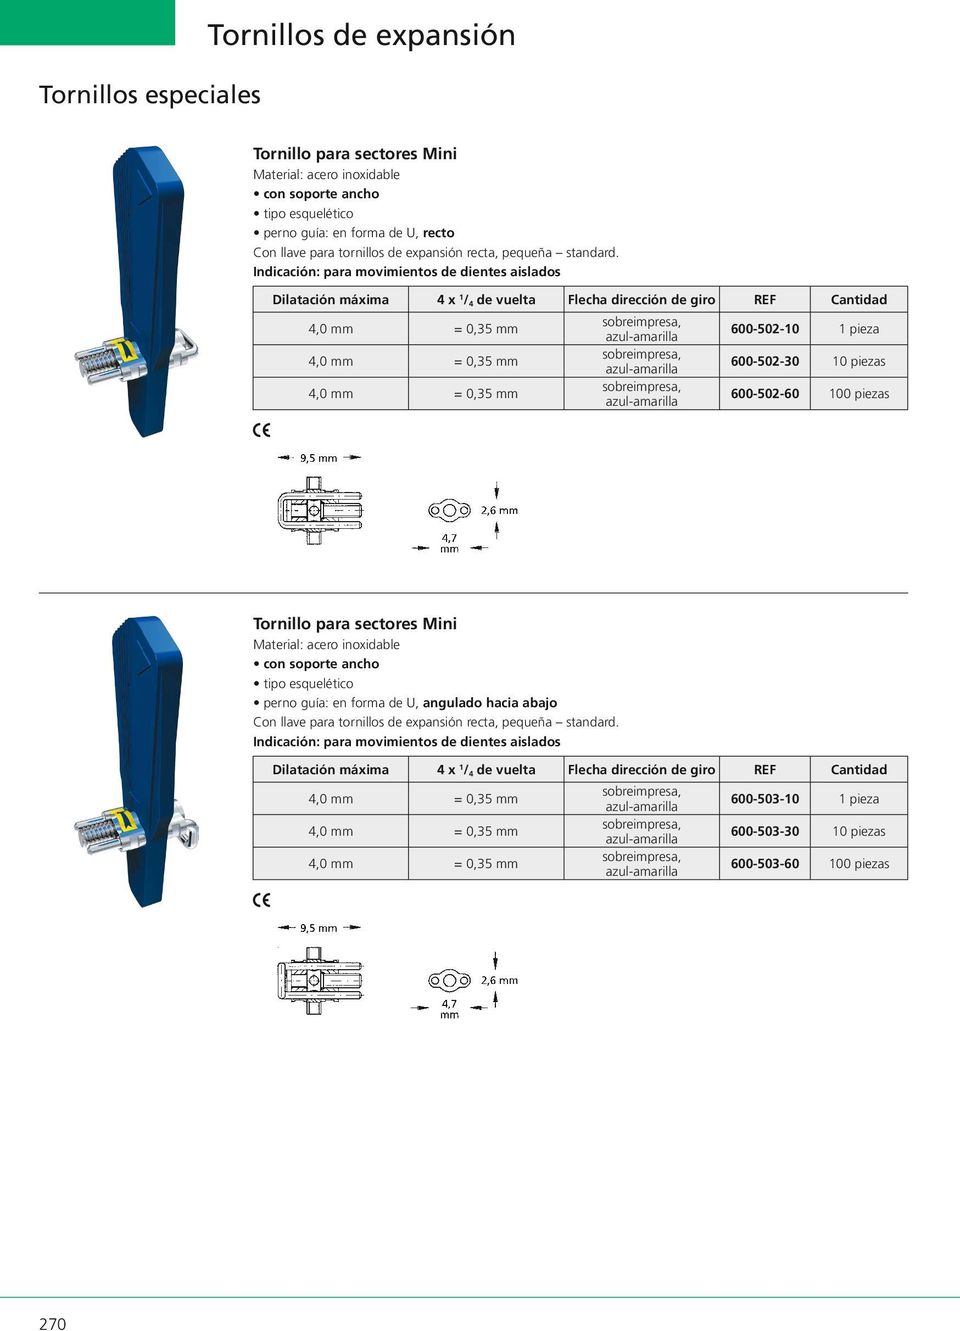 600-502-60 100 piezas Tornillo para sectores Mini con soporte ancho perno guía: en forma de U, angulado hacia abajo Indicación: para